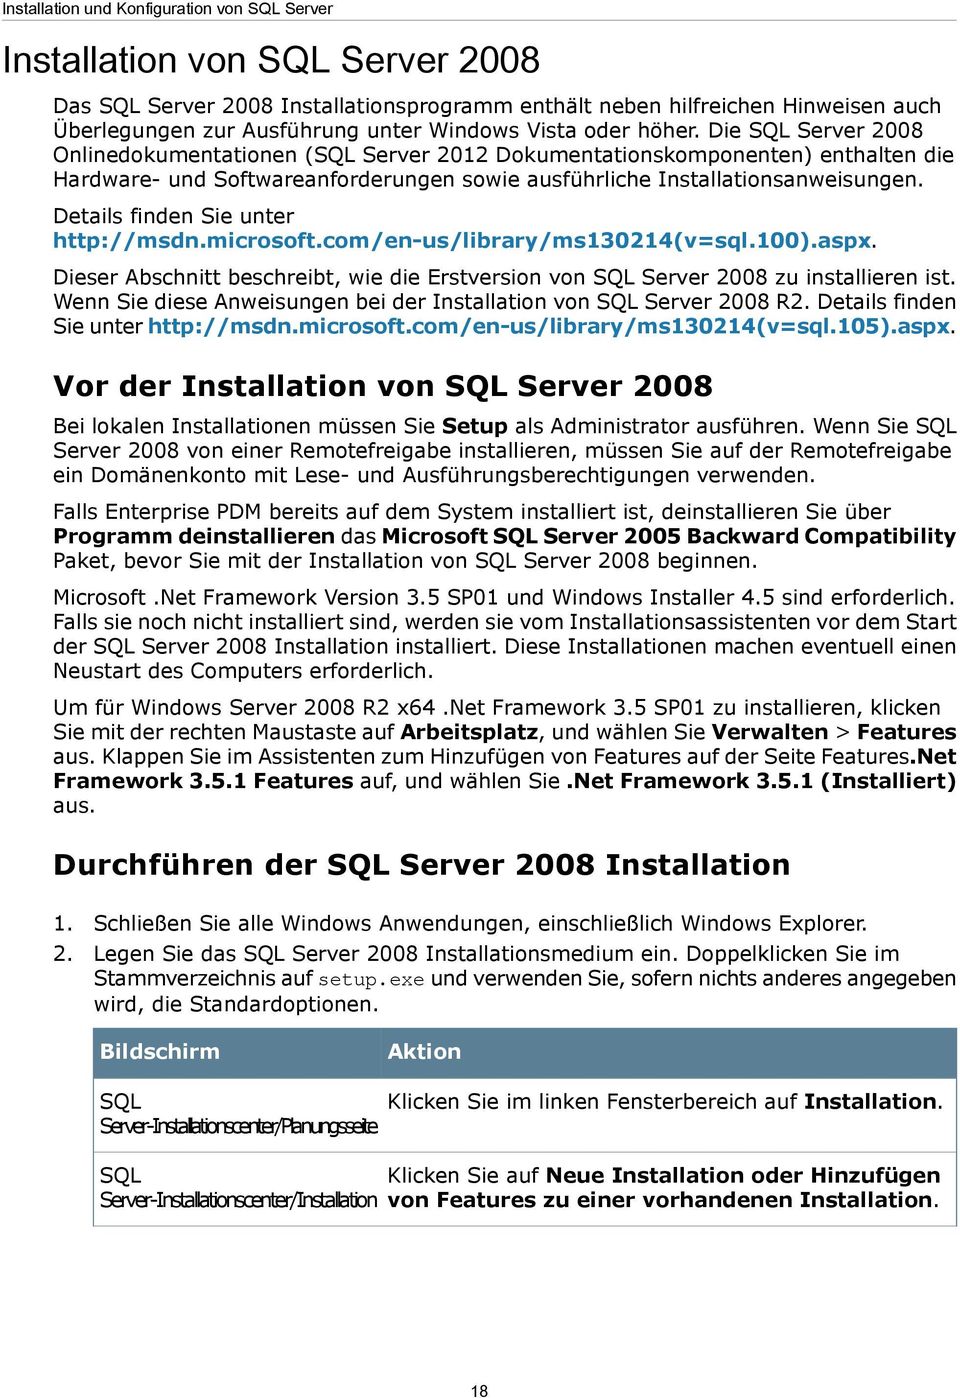 Die SQL Server 2008 Onlinedokumentationen (SQL Server 2012 Dokumentationskomponenten) enthalten die Hardware- und Softwareanforderungen sowie ausführliche Installationsanweisungen.